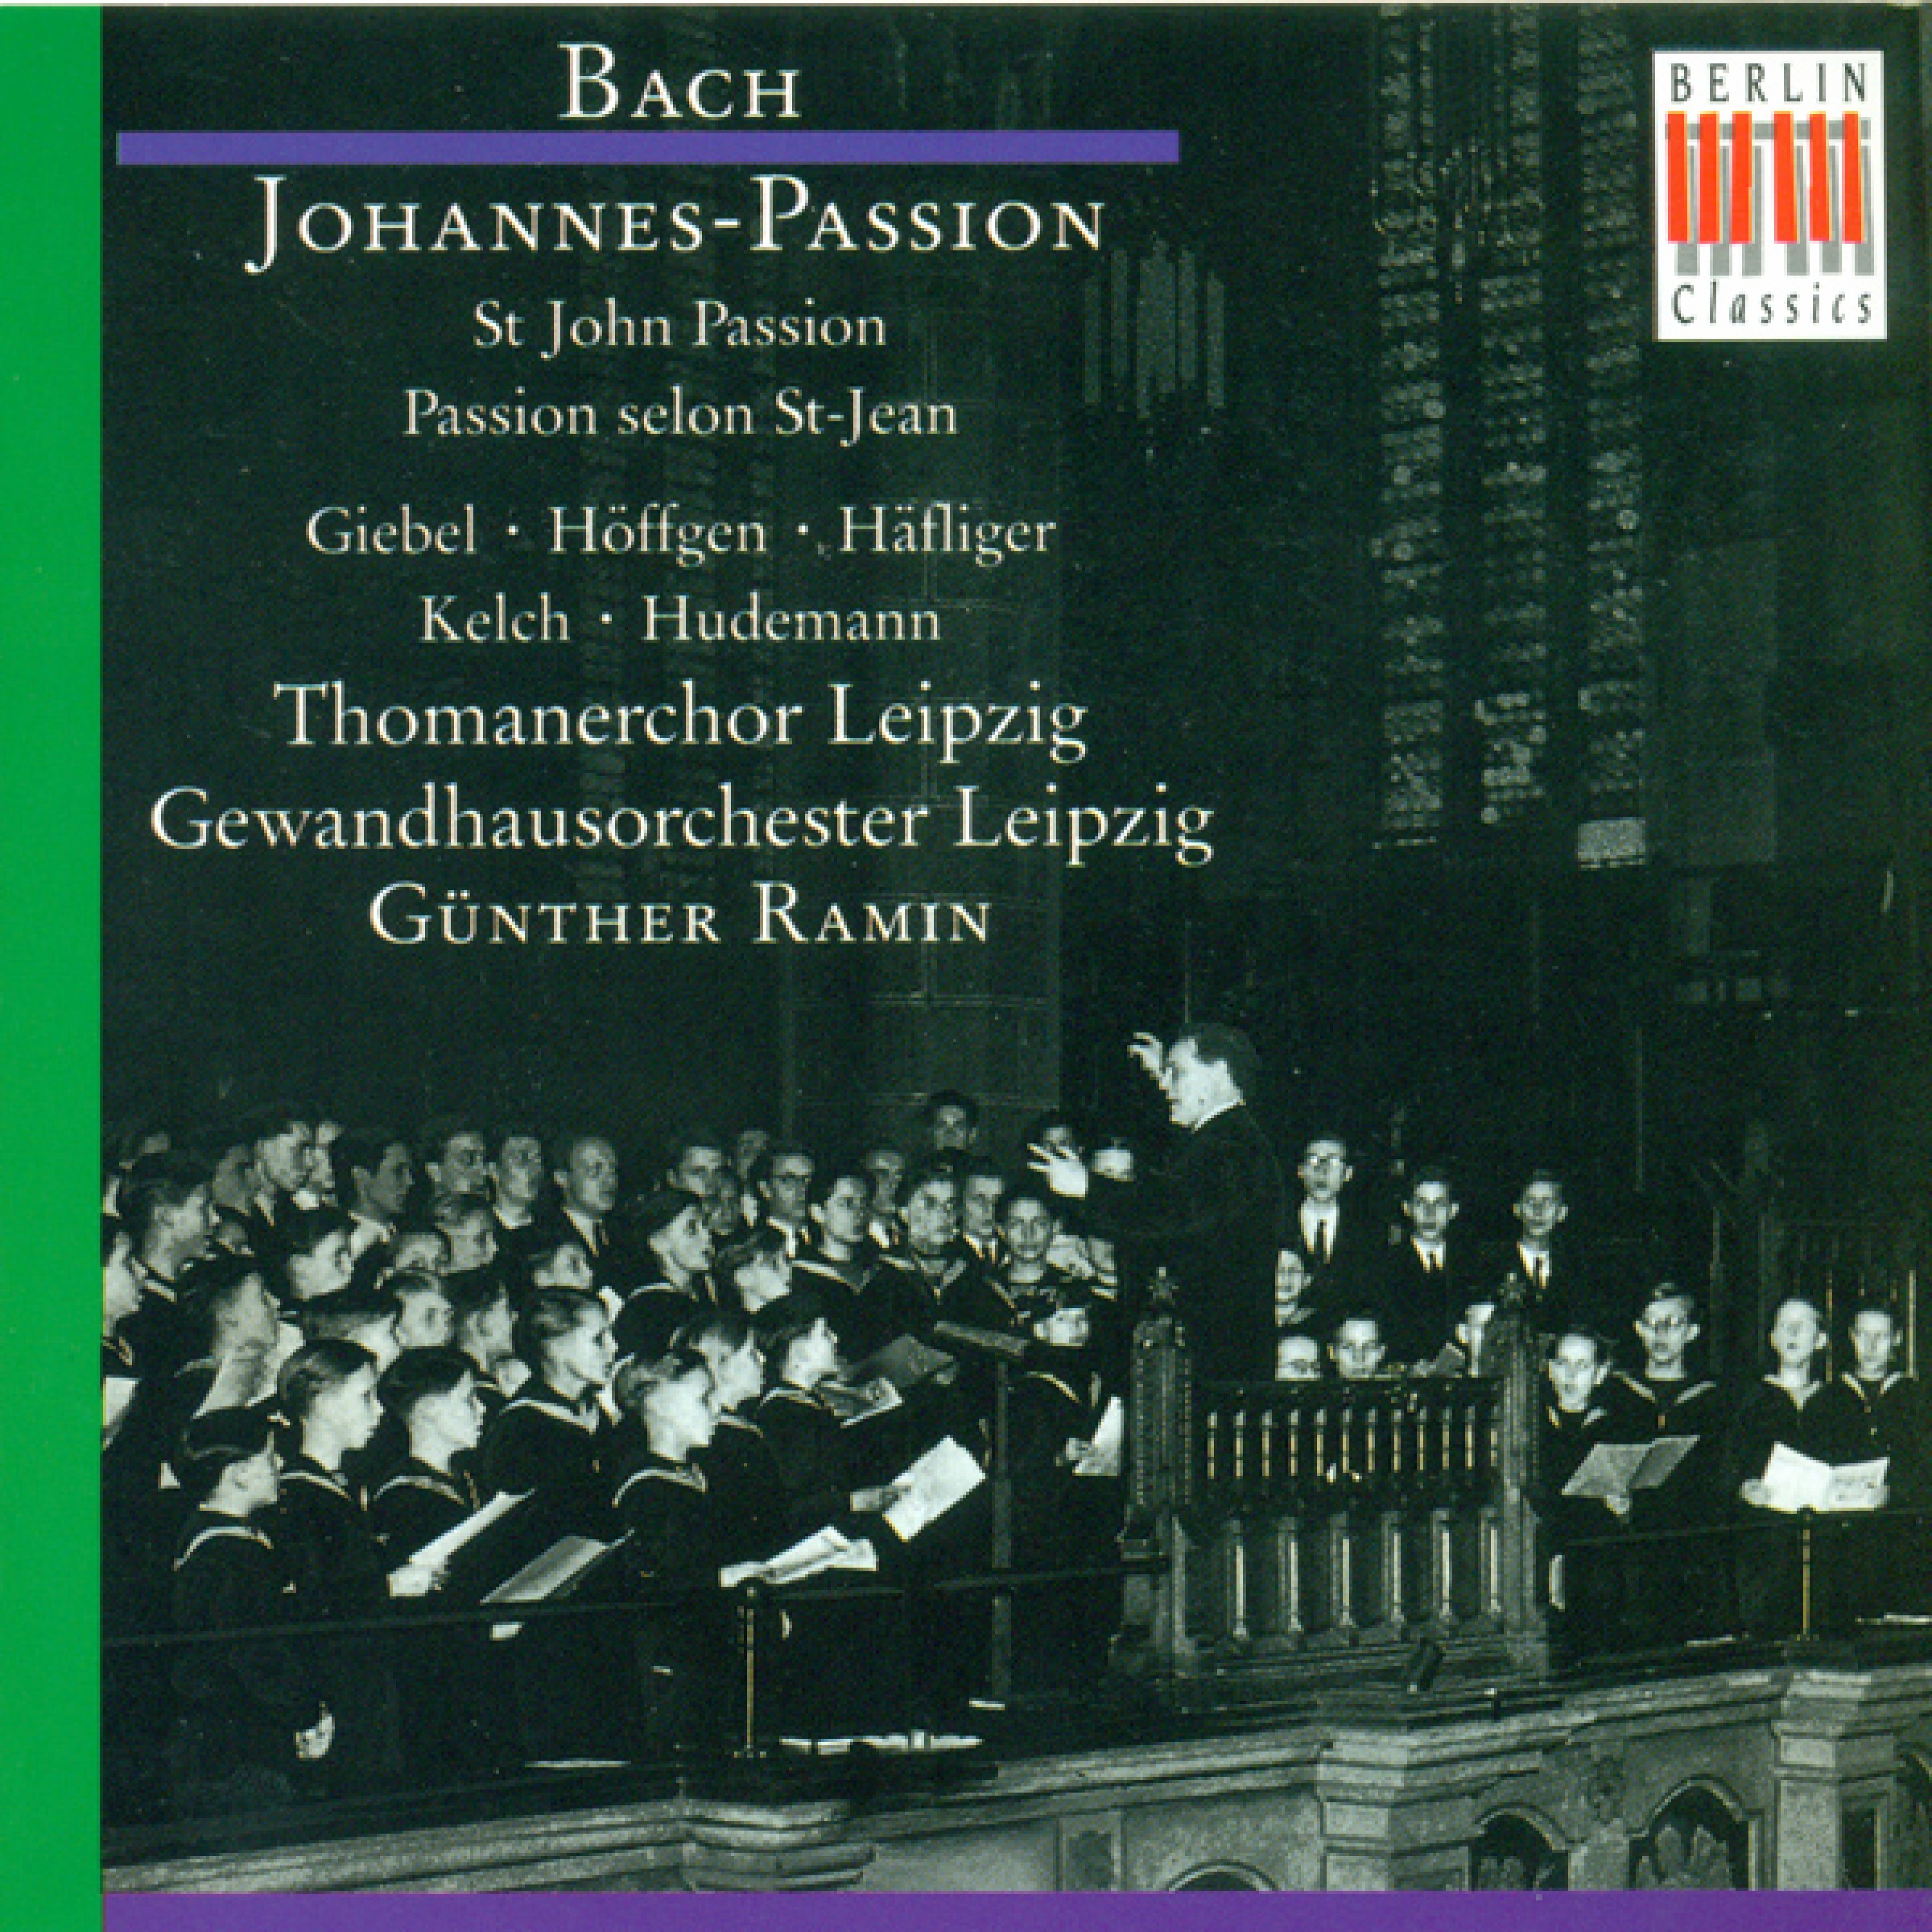 Johannes-Passion, BWV 245: Part II - "Pilatus sprach zu Ihnen"